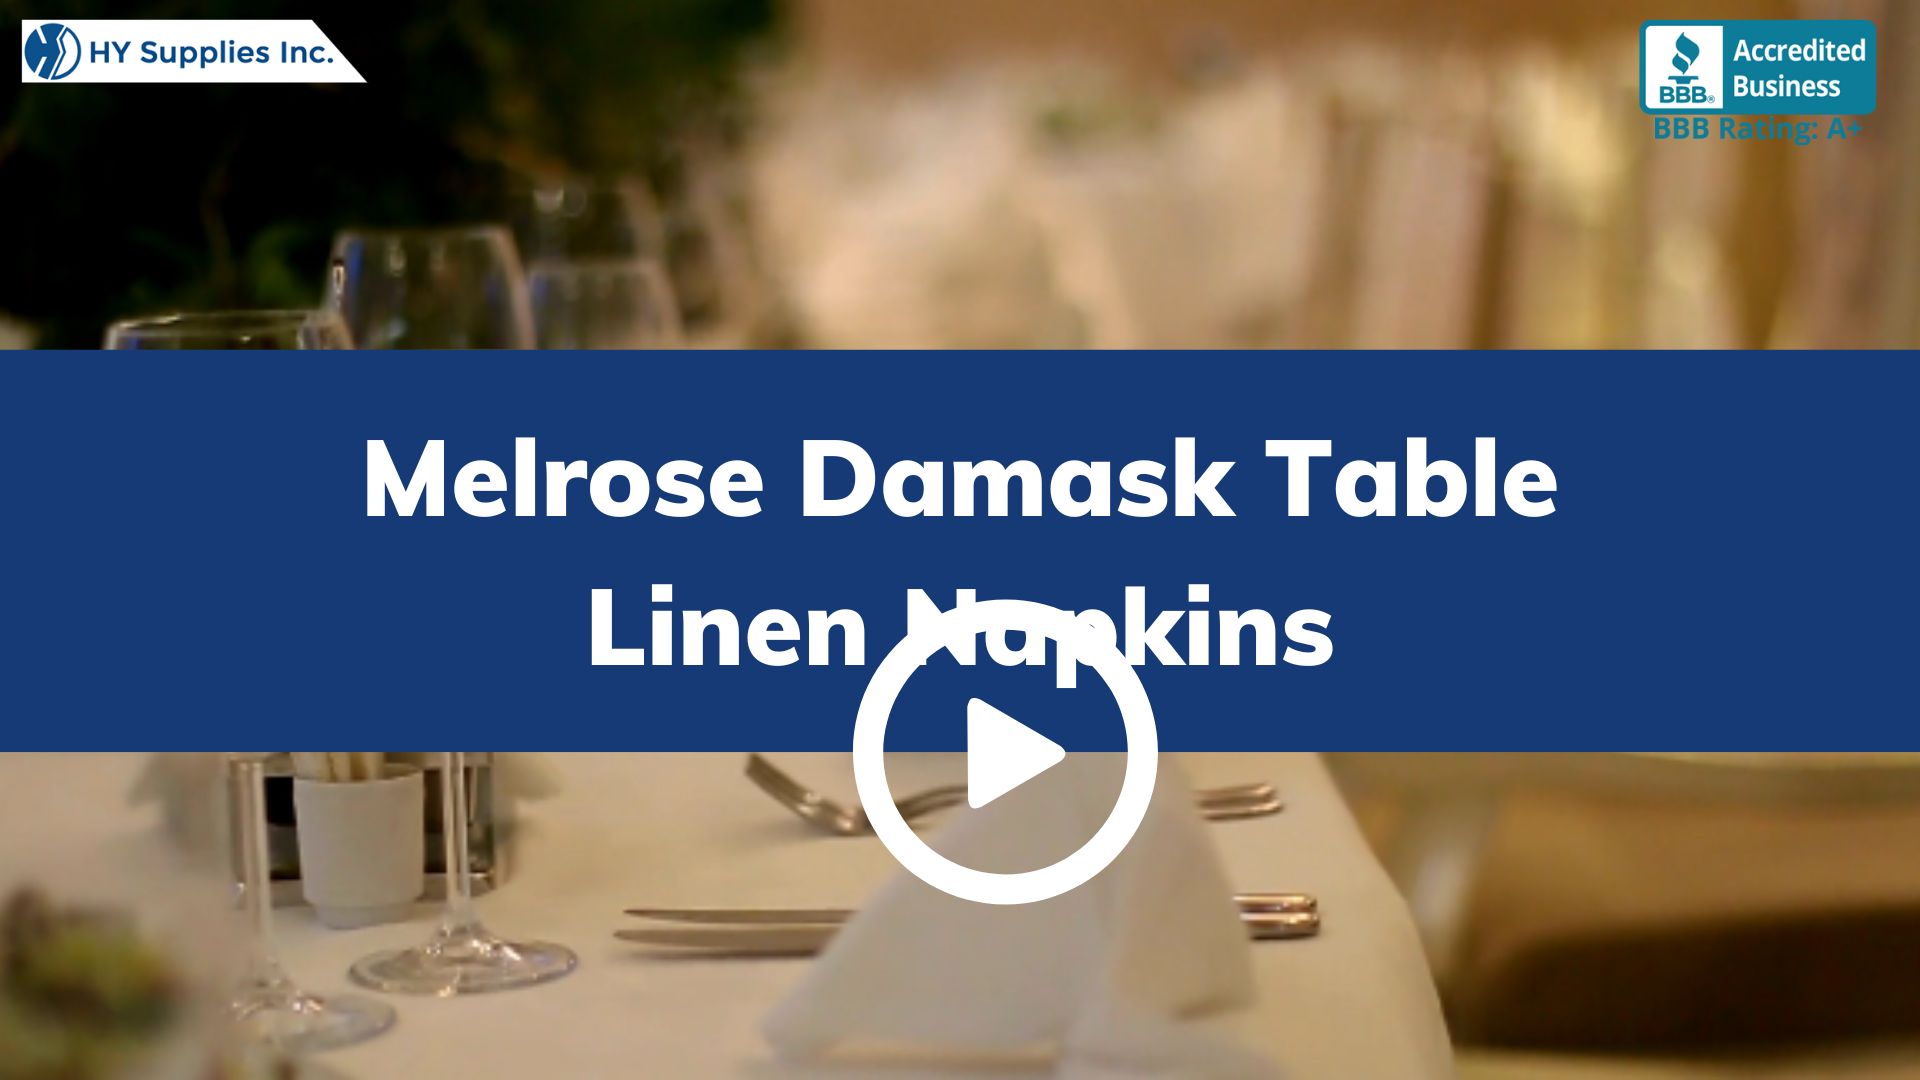 Melrose Damask Table Linen Napkins